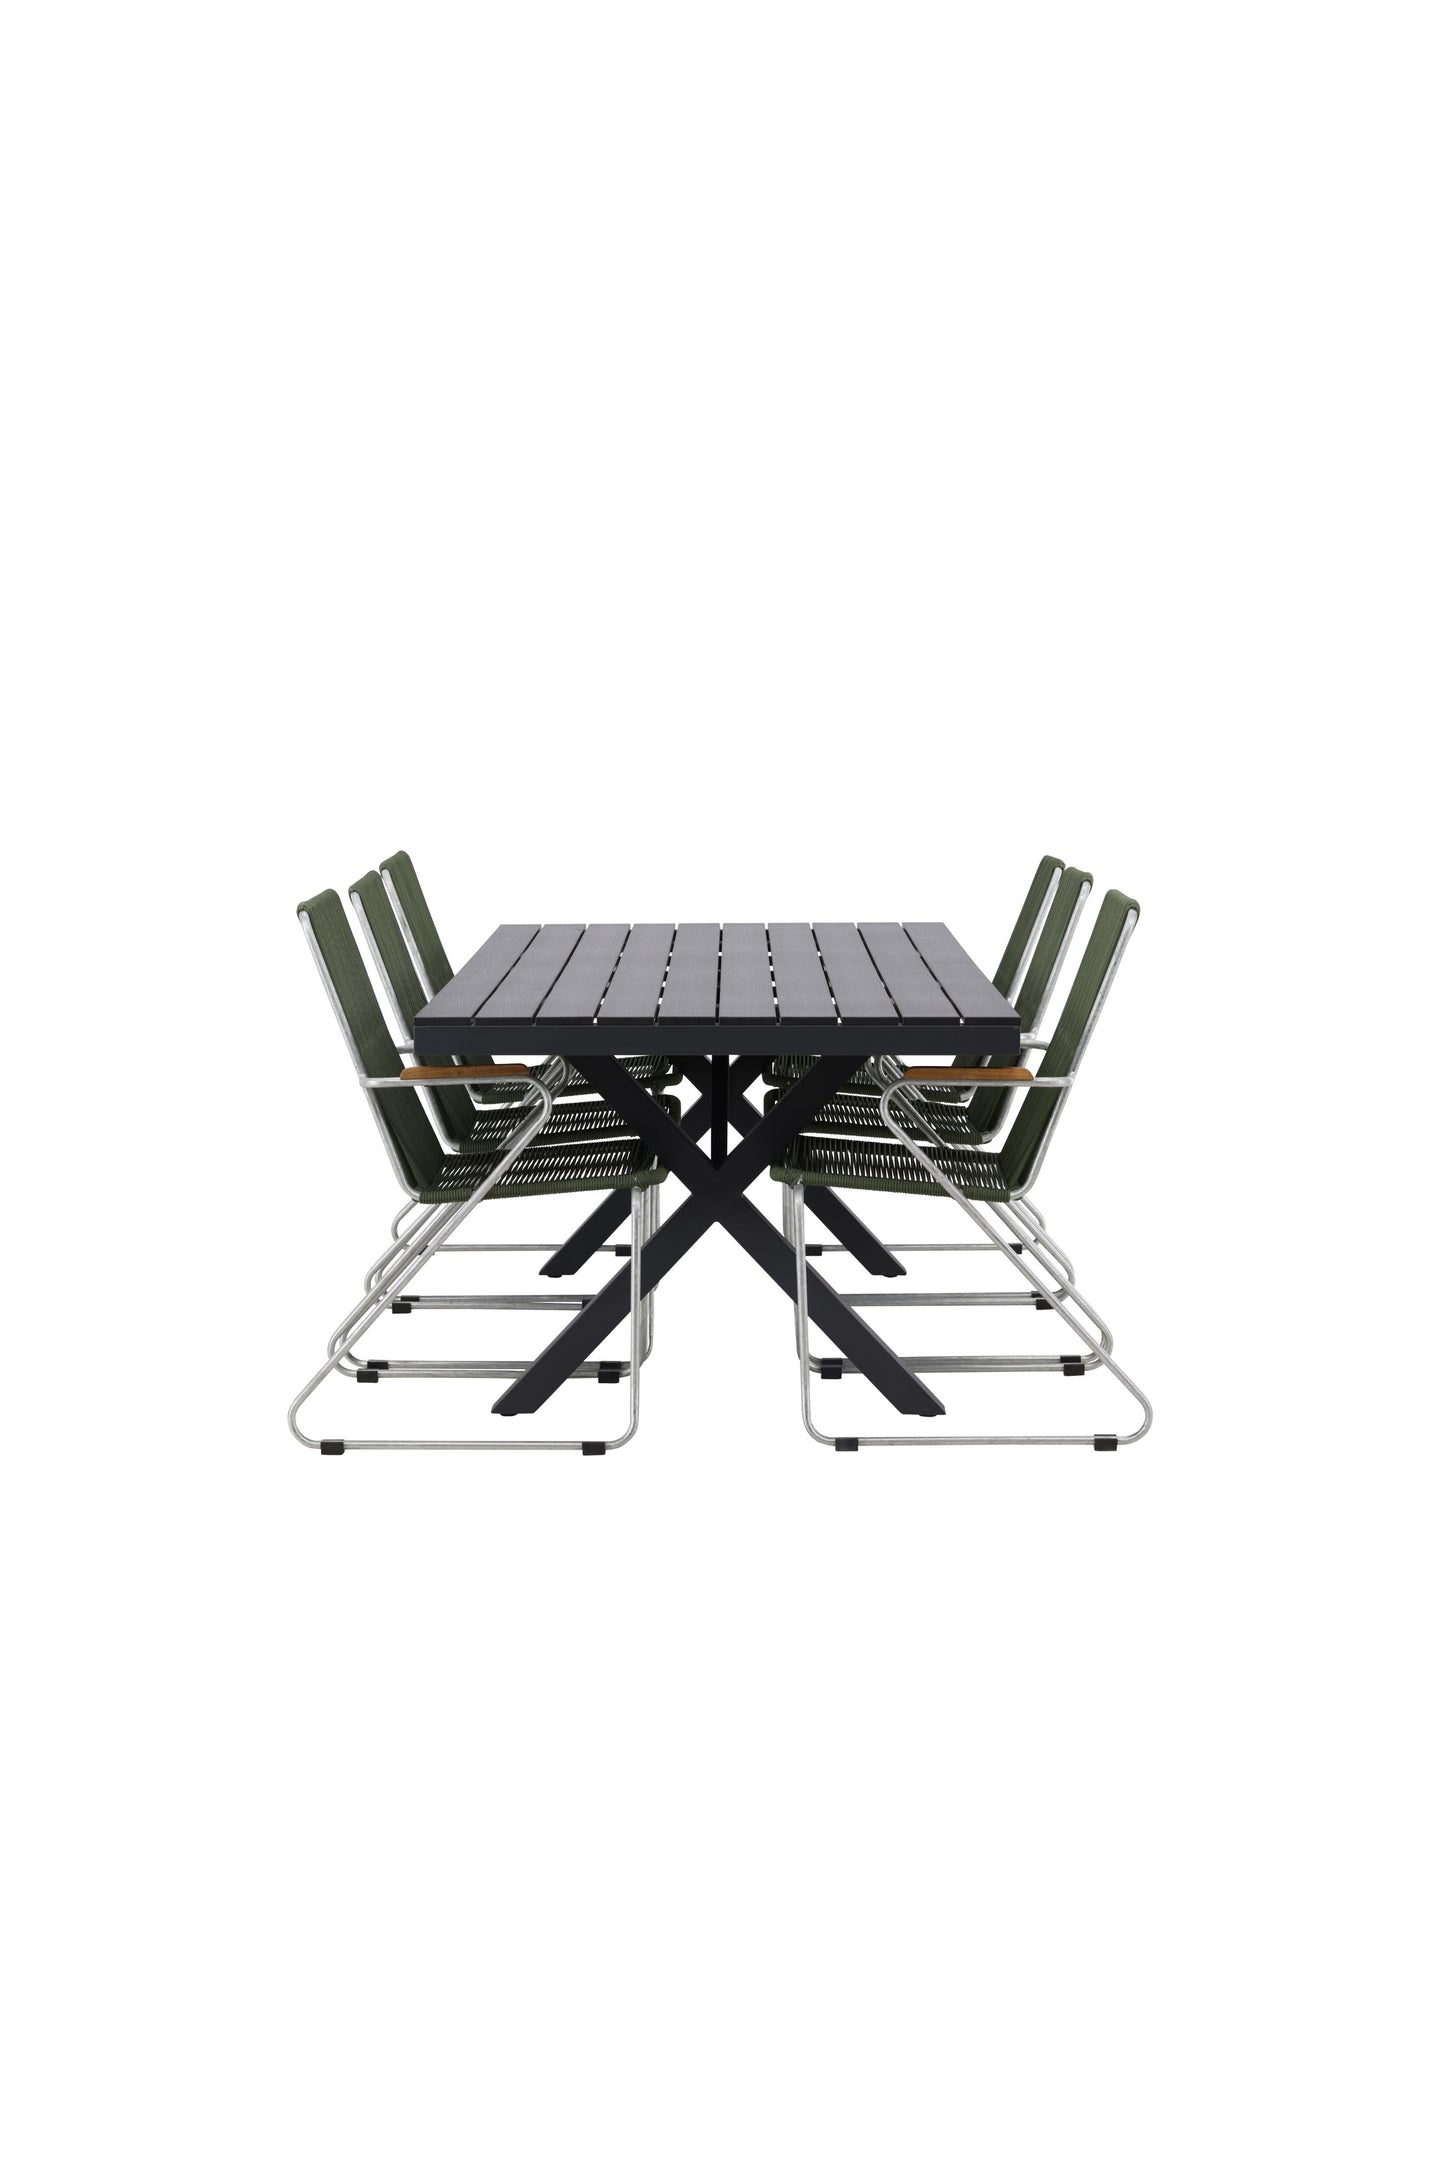 Garcia - Spisebord, Aluminium - Sort / Rektangulær 100*200* + Bois stol Stål - Sølv / Grønt Reb